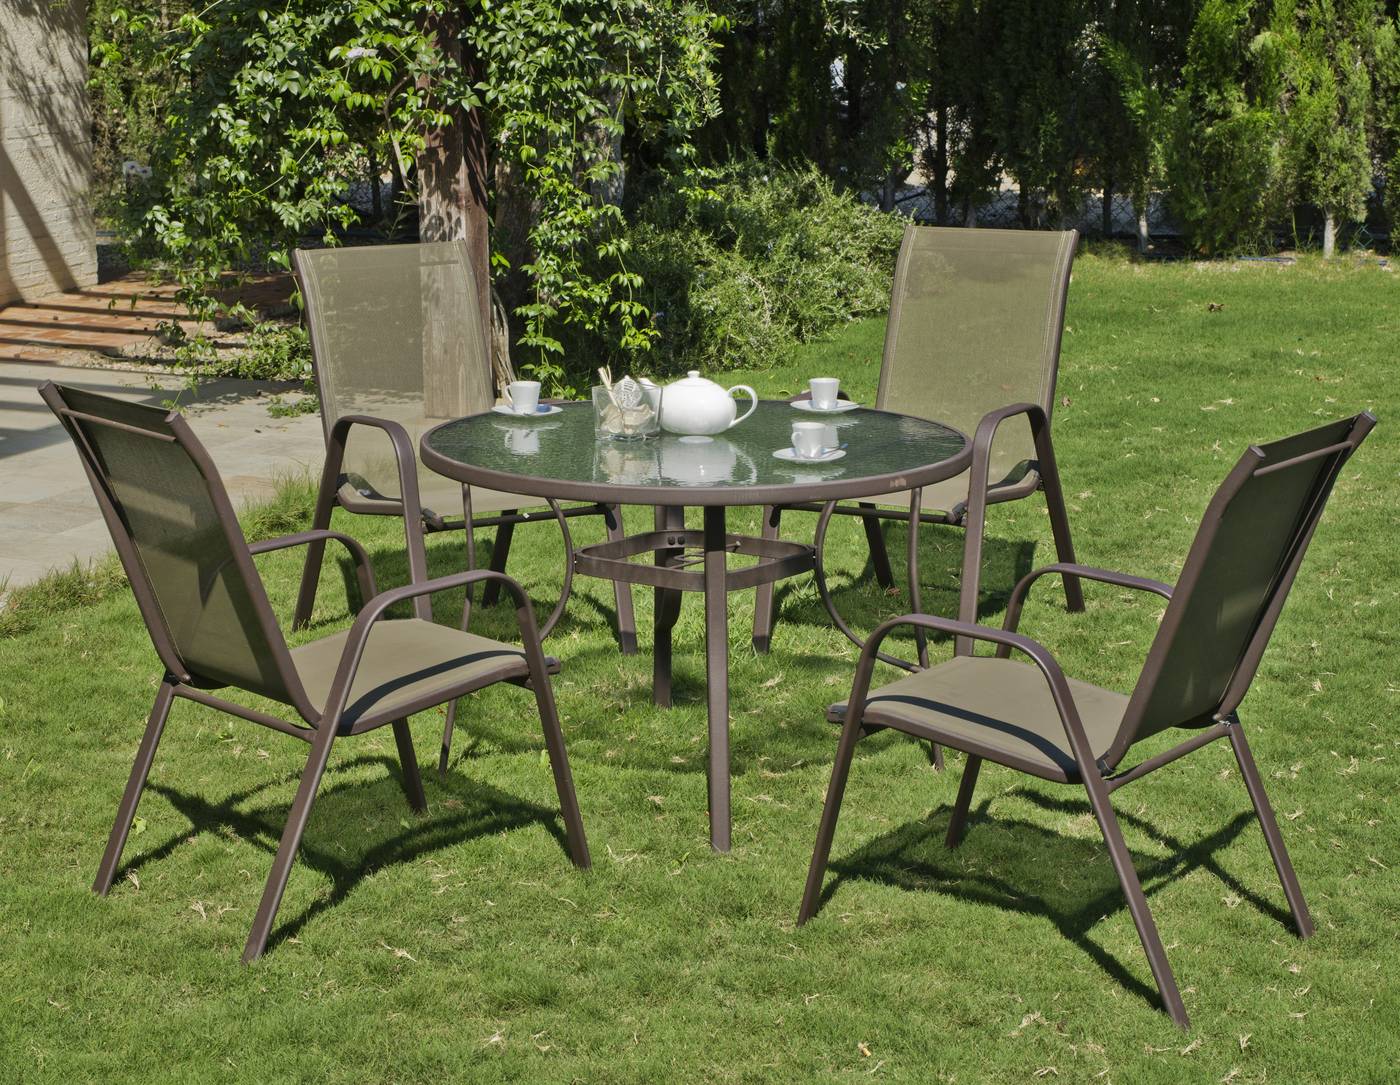 Conjunto para jardín de acero inoxidable: 1 mesa redonda con tablero de cristal templado + 4 sillones de acero y textilen